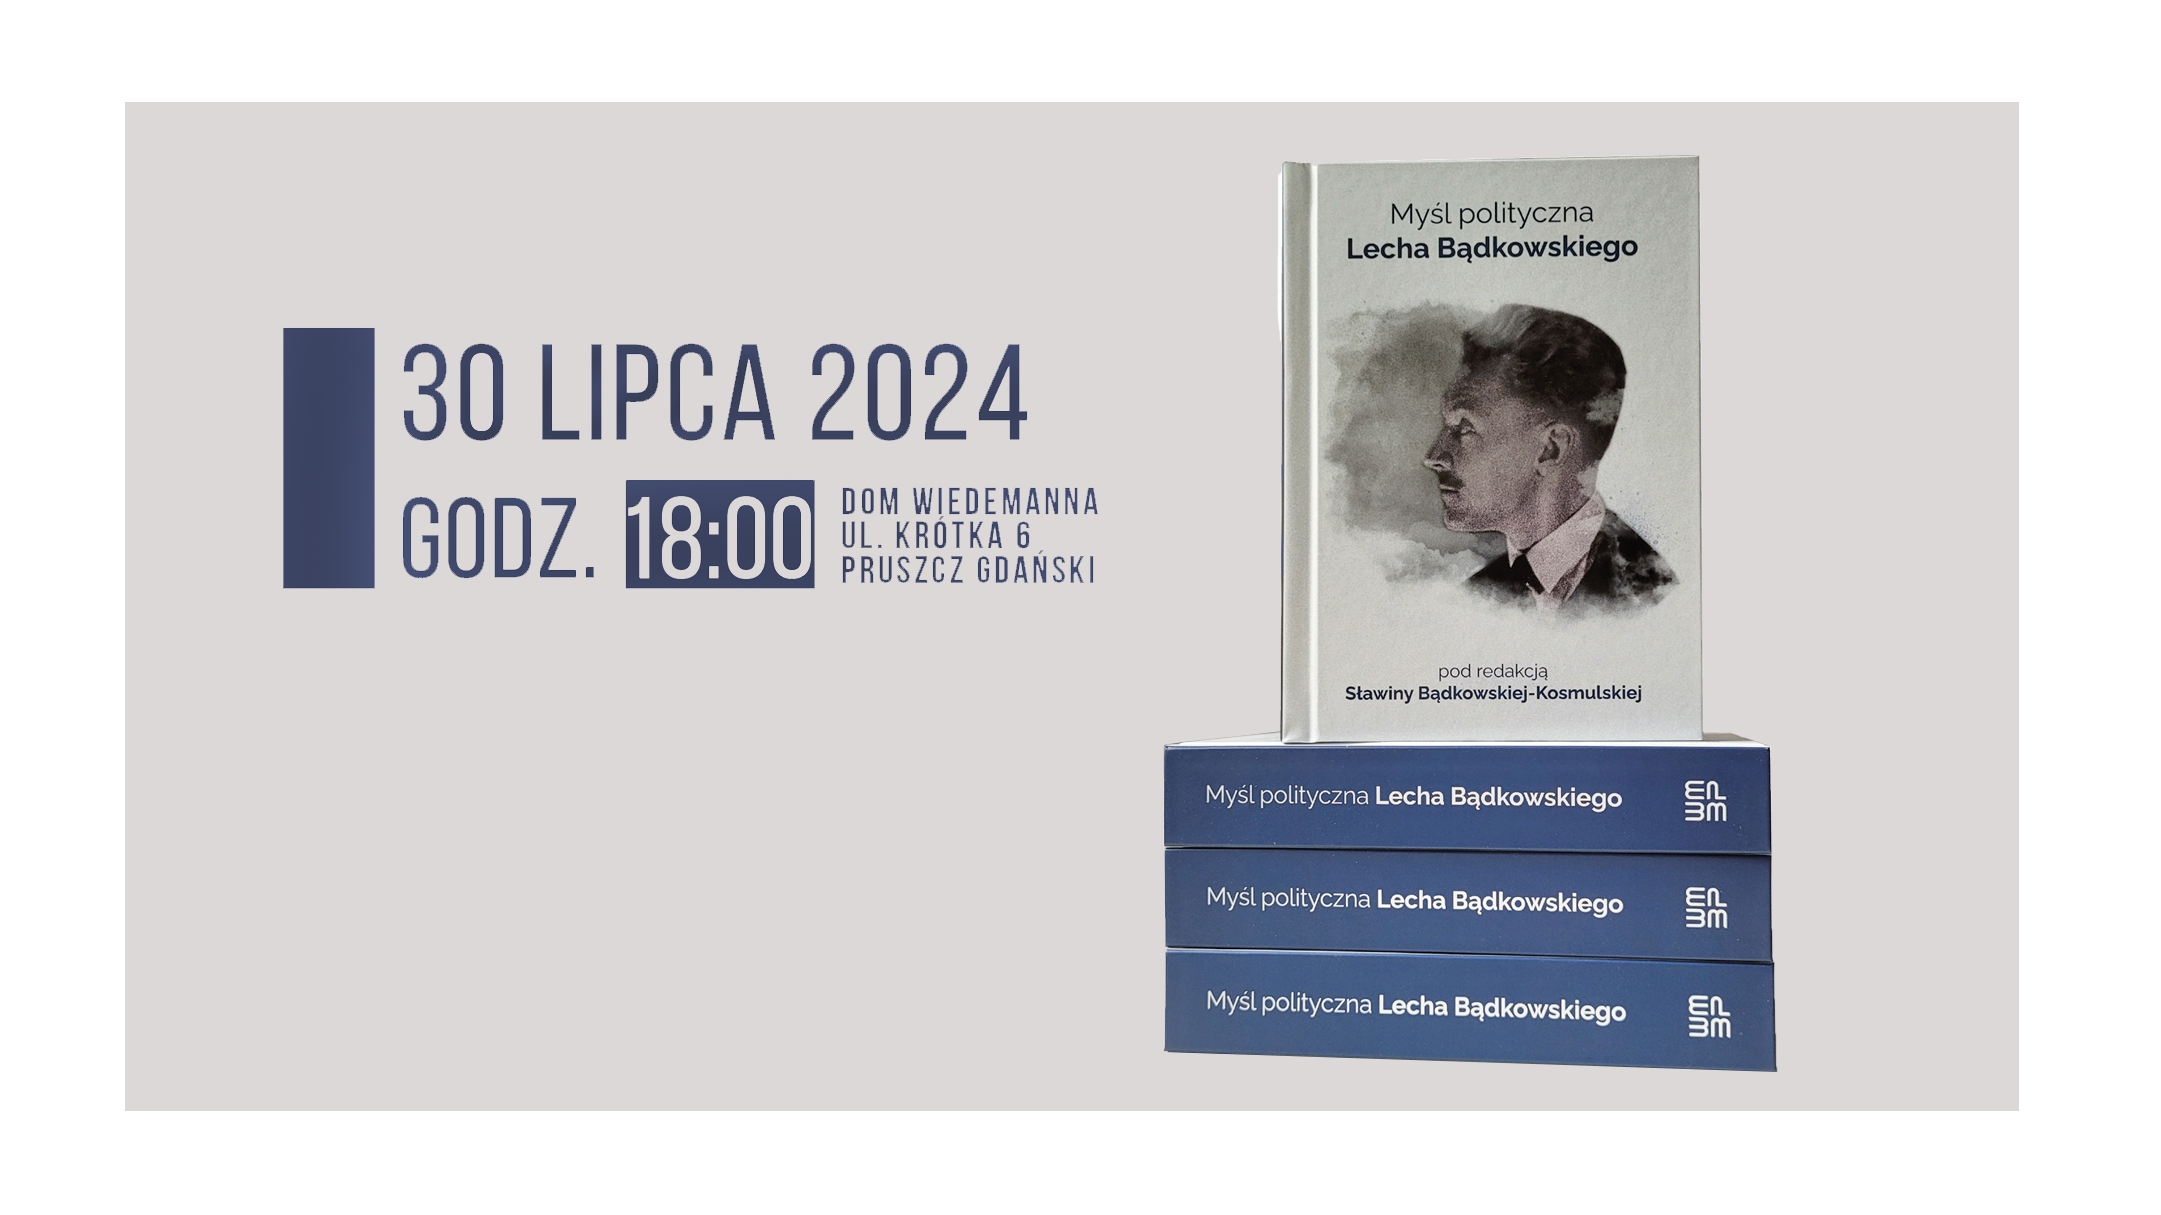 Wydarzenie: Promocja książki o Lechu Bądkowskim, Kiedy? 2024-07-30 17:00, Gdzie? ul. Krótka 6, 83-000 Pruszcz Gdański